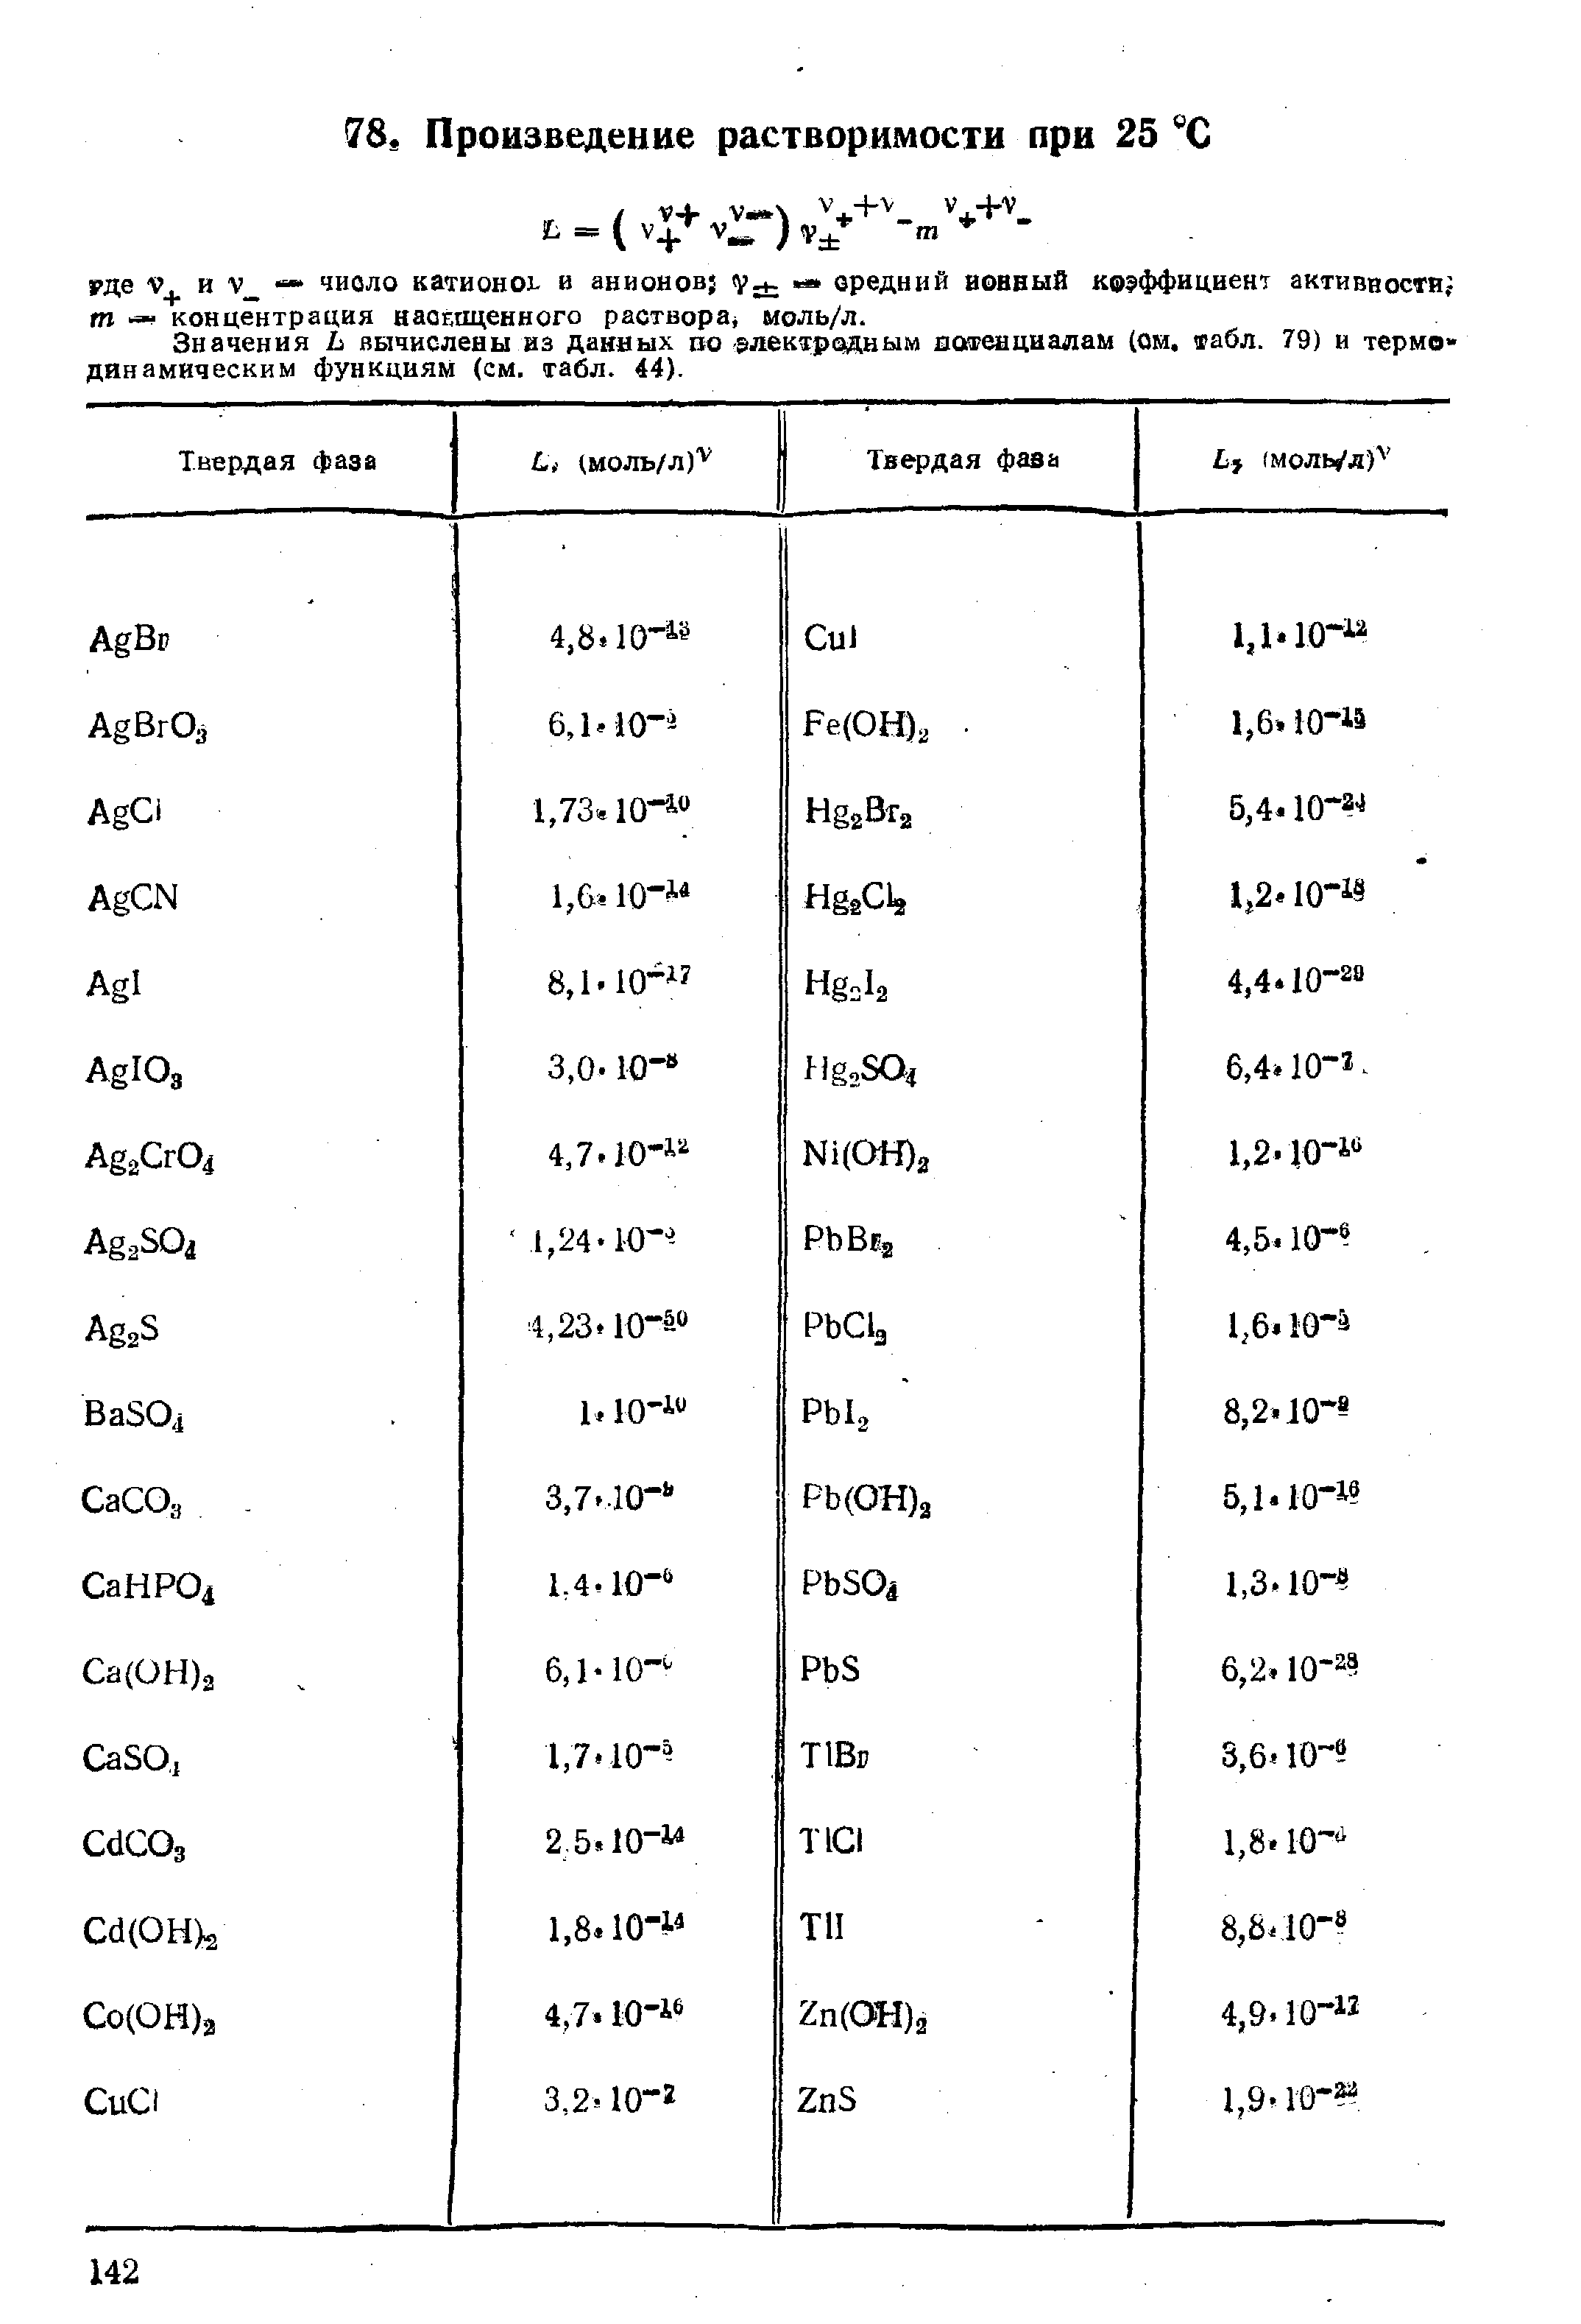 Значения Ь вычислены из данных по электродным ио енциалам (ои, фабл. 79) и термодинамическим функциям (см. табл. 44).